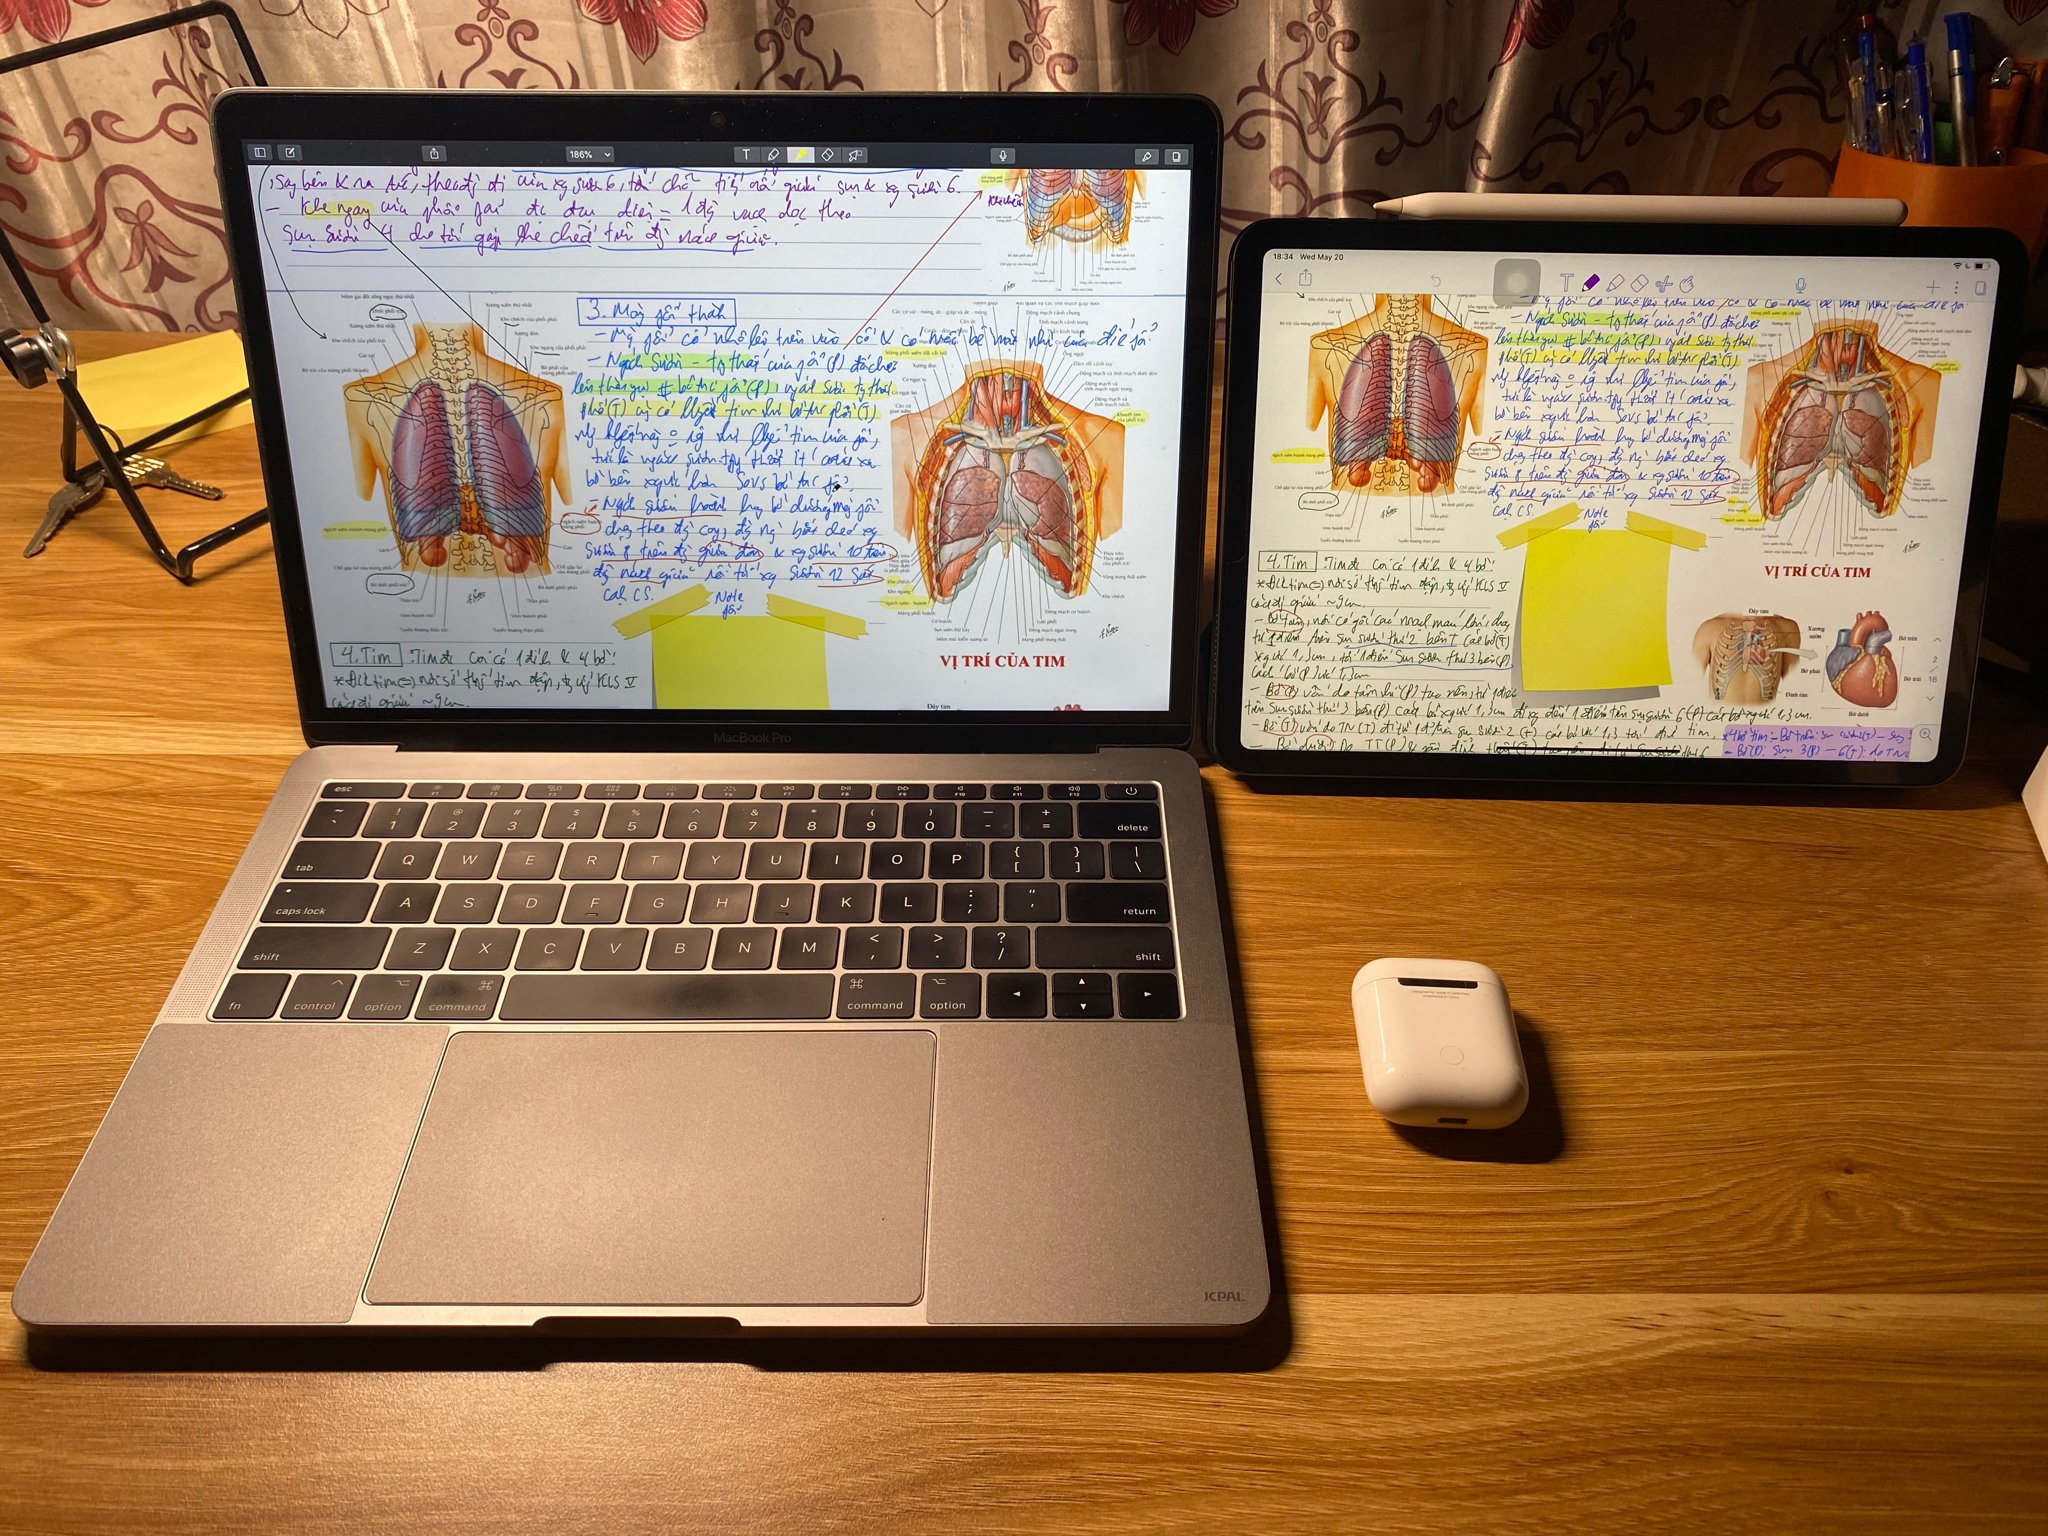 iPadOS + Apple pencil và hệ sinh thái Apple đã thay đổi hoàn toàn cách làm việc của mình